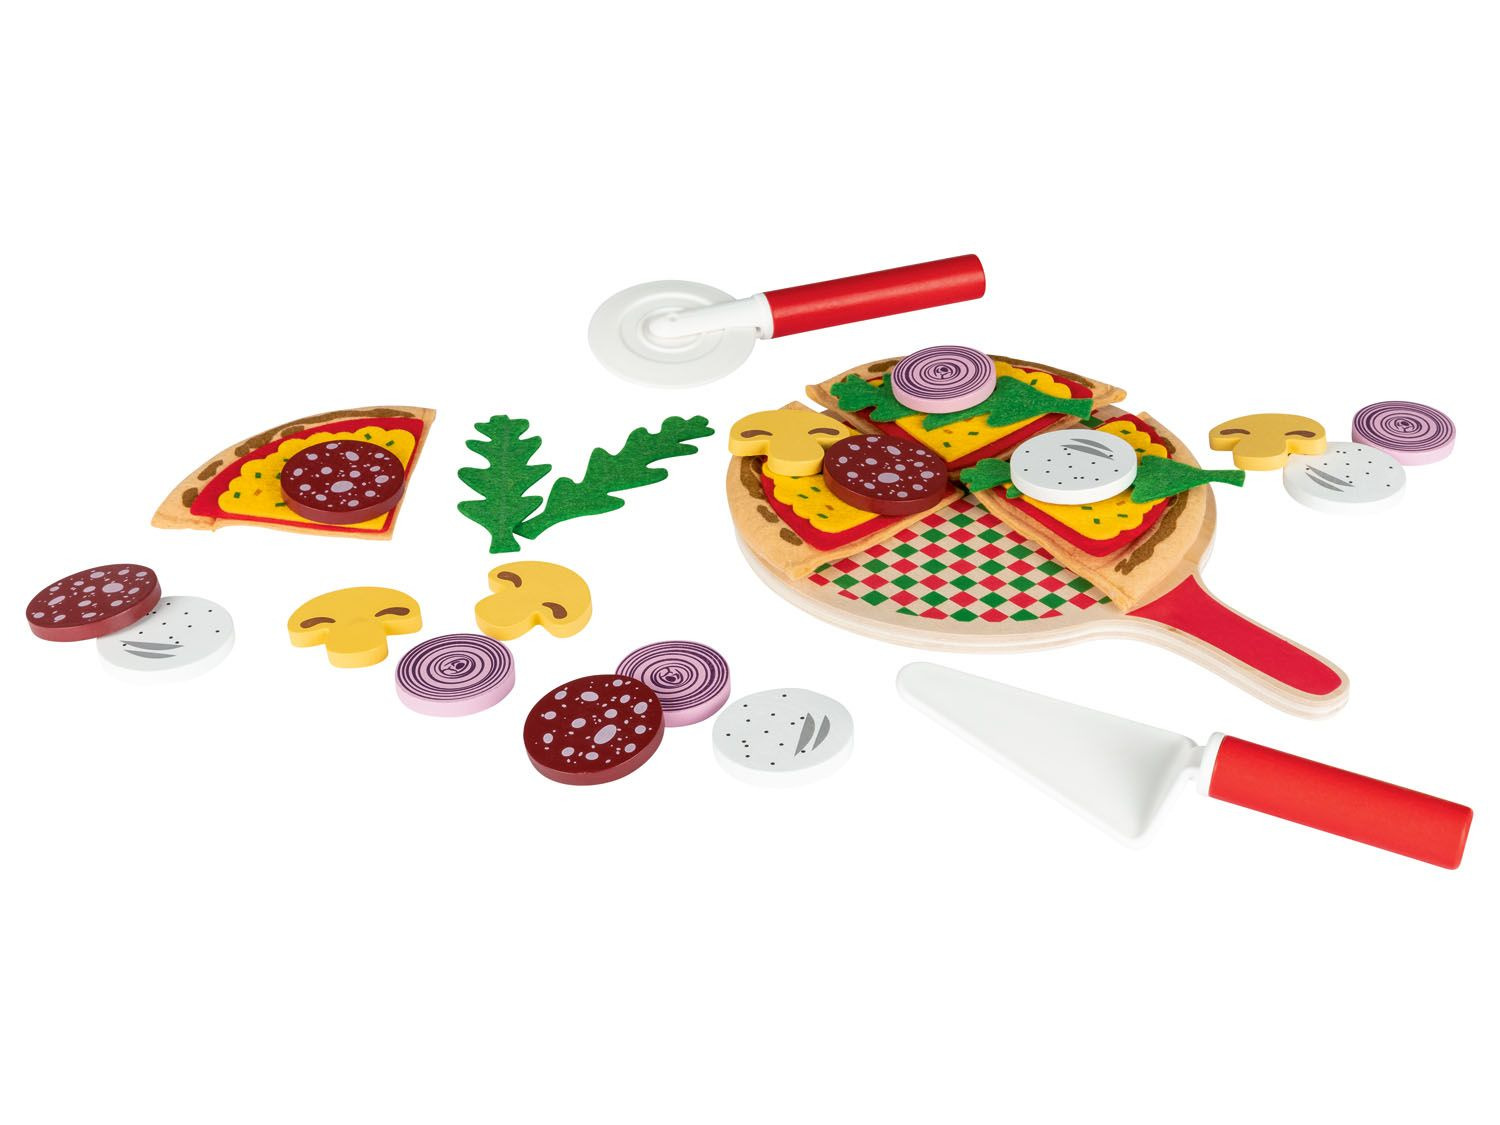 Neerduwen omverwerping Overeenkomend Playtive Pizza-set online kopen op Lidl.be